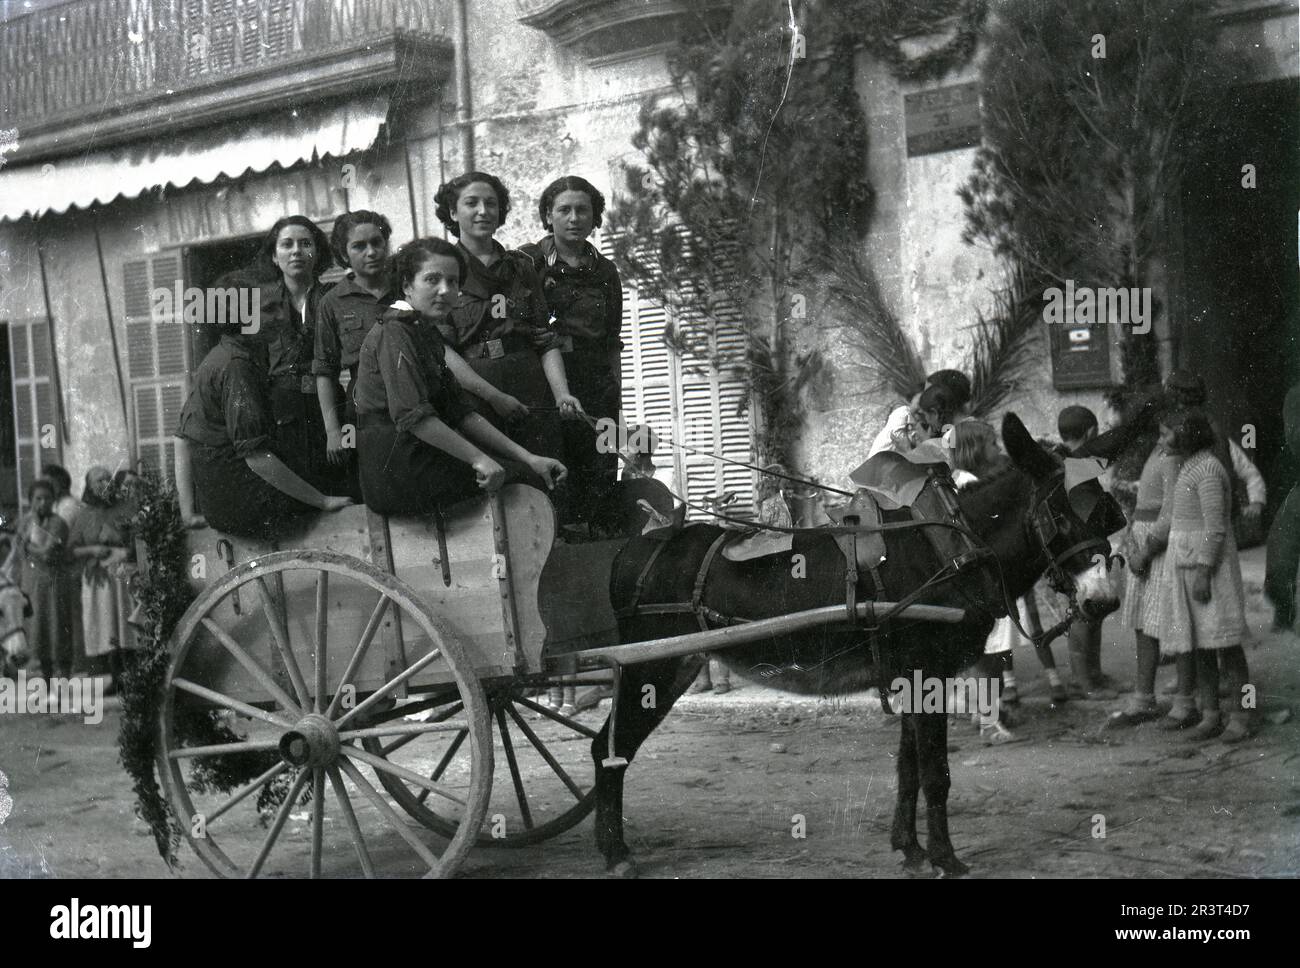 Image historique du début du 20th siècle, Porreres, Majorque, Espagne. Banque D'Images